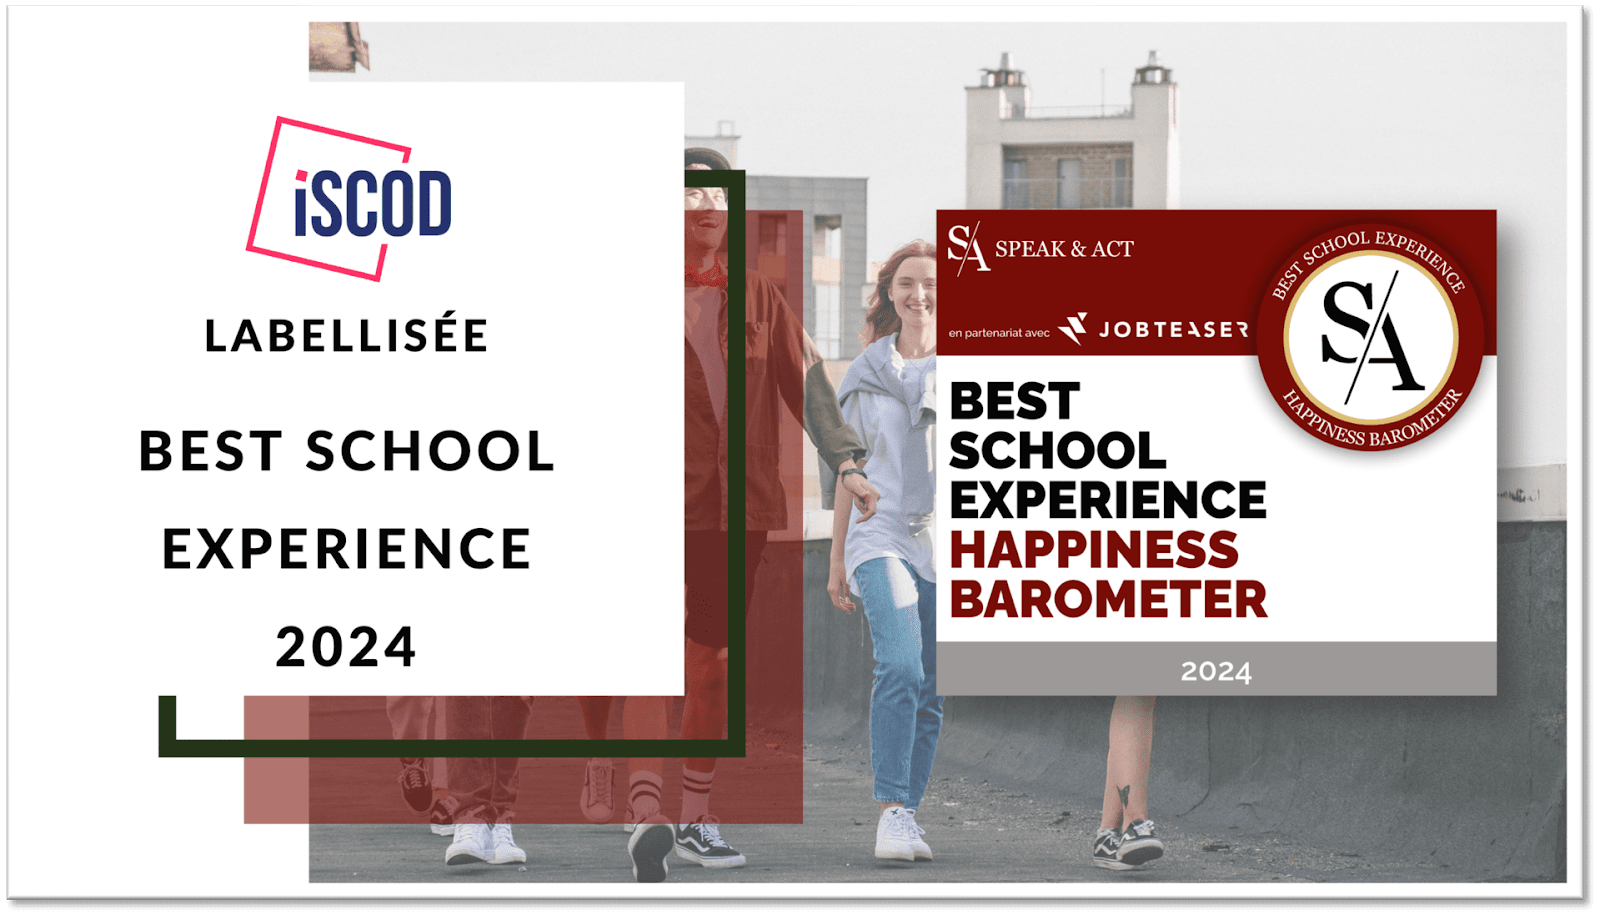 L'iSCOD de nouveau labellisée Best School Experience par le Happiness Barometer Speak & Act 2024